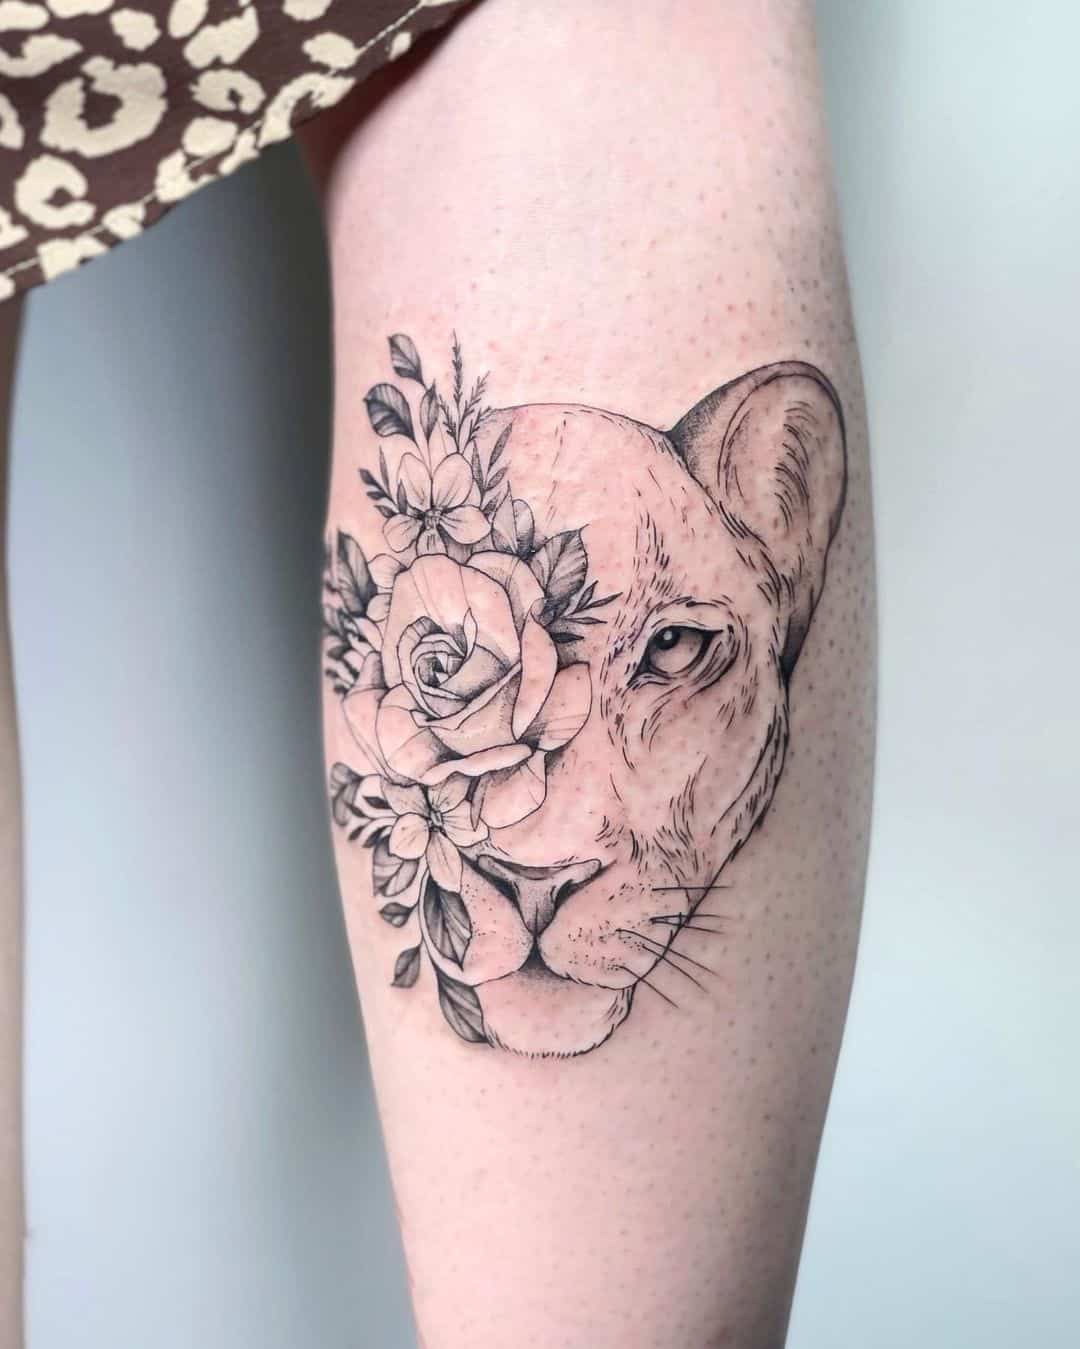 A Lion flower tattoo is an image... - Danish Tattooz House | Facebook